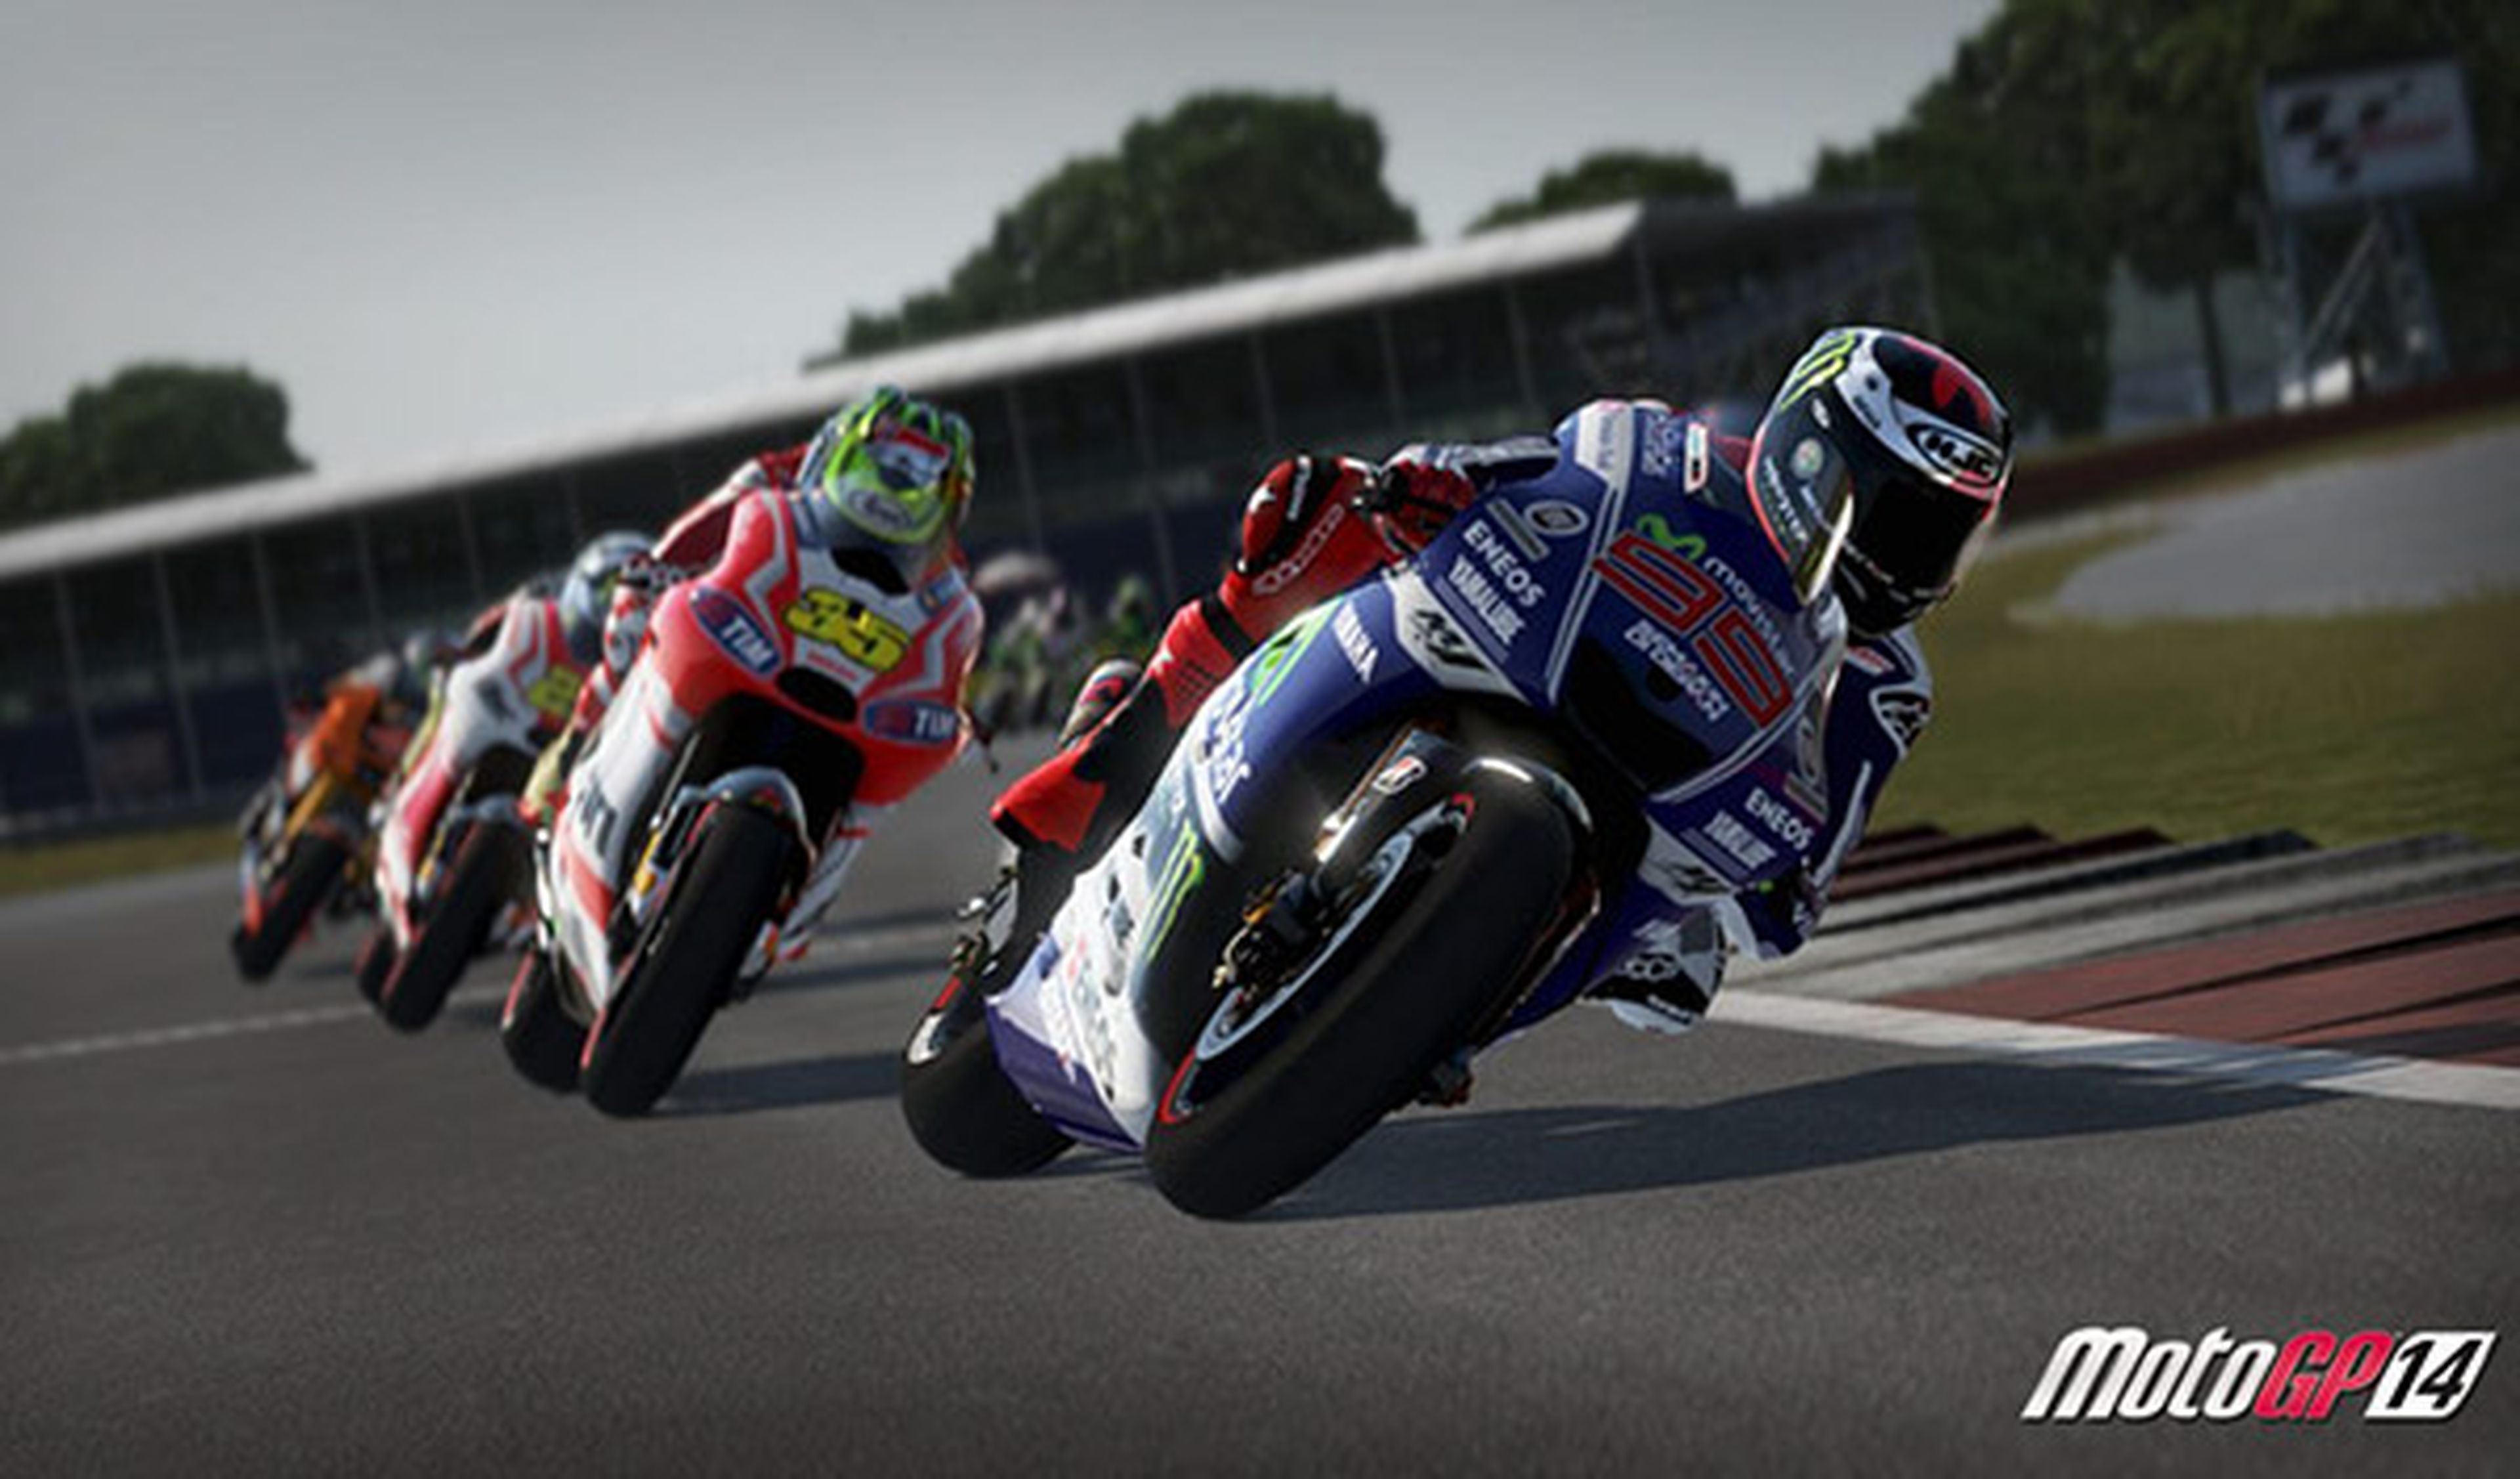 El Mundial llega a las consolas y PC con el juego MotoGP 14